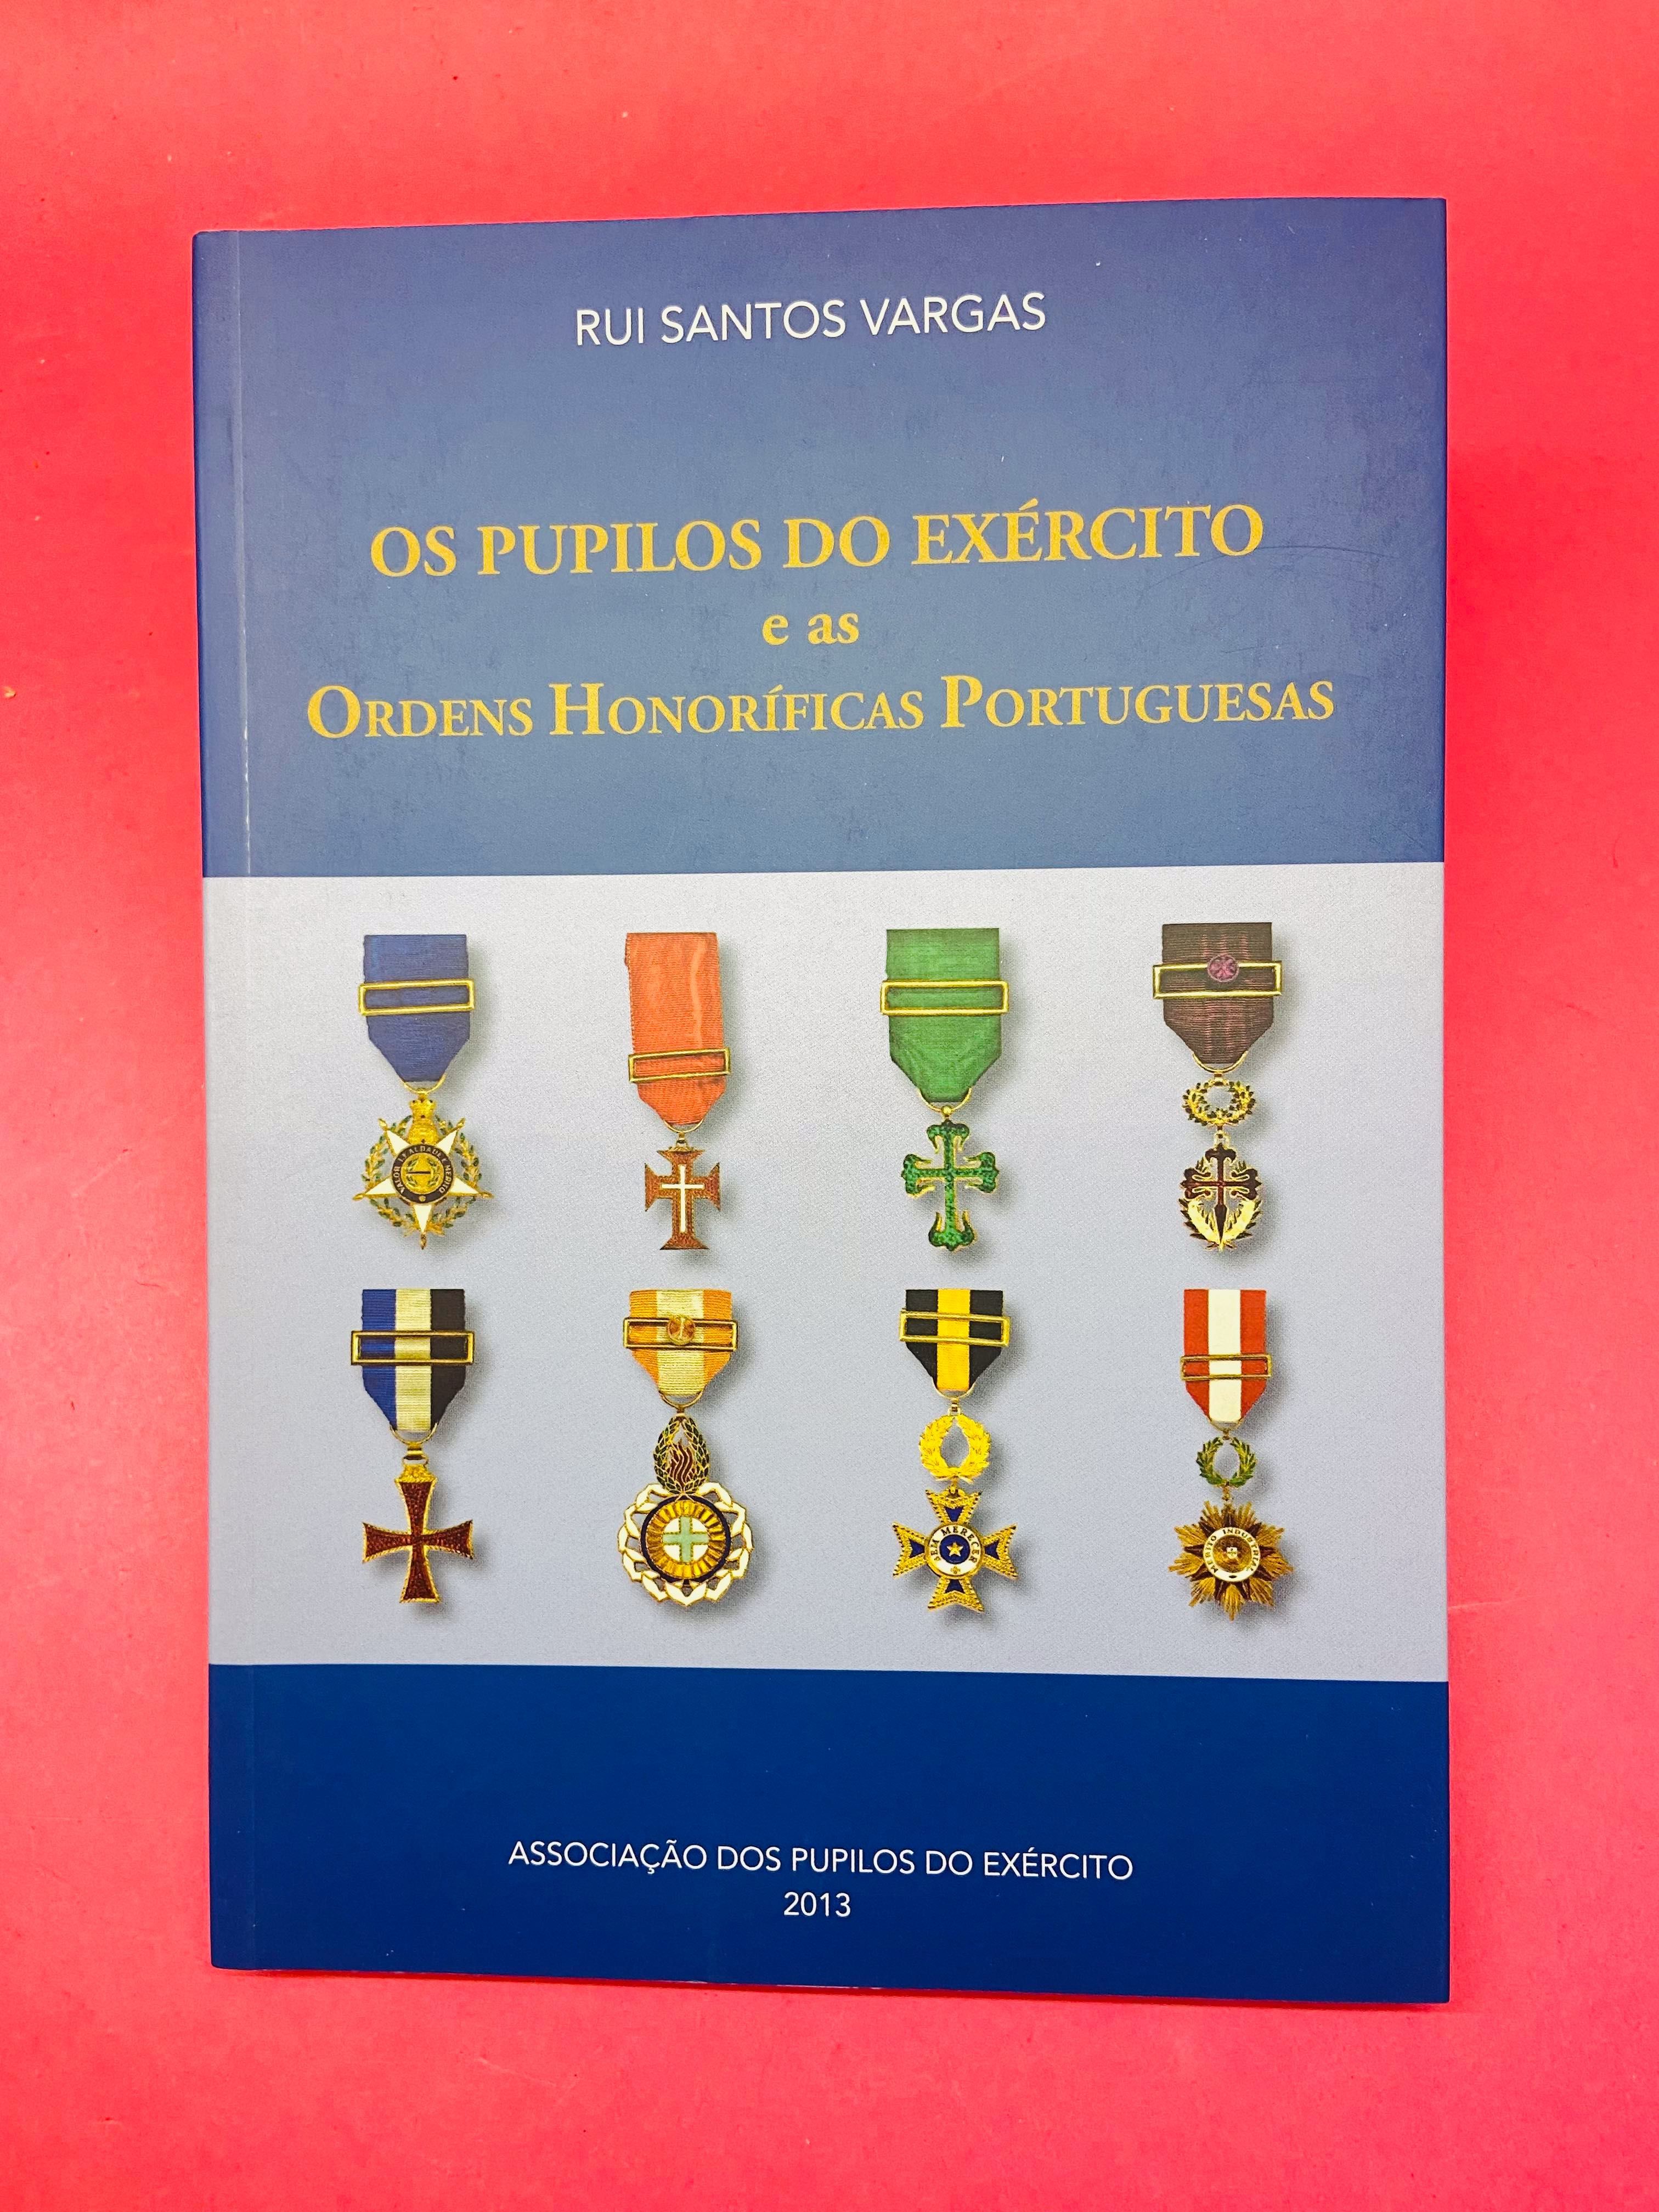 Os Pupilos do Exército - Rui Santos Vargas